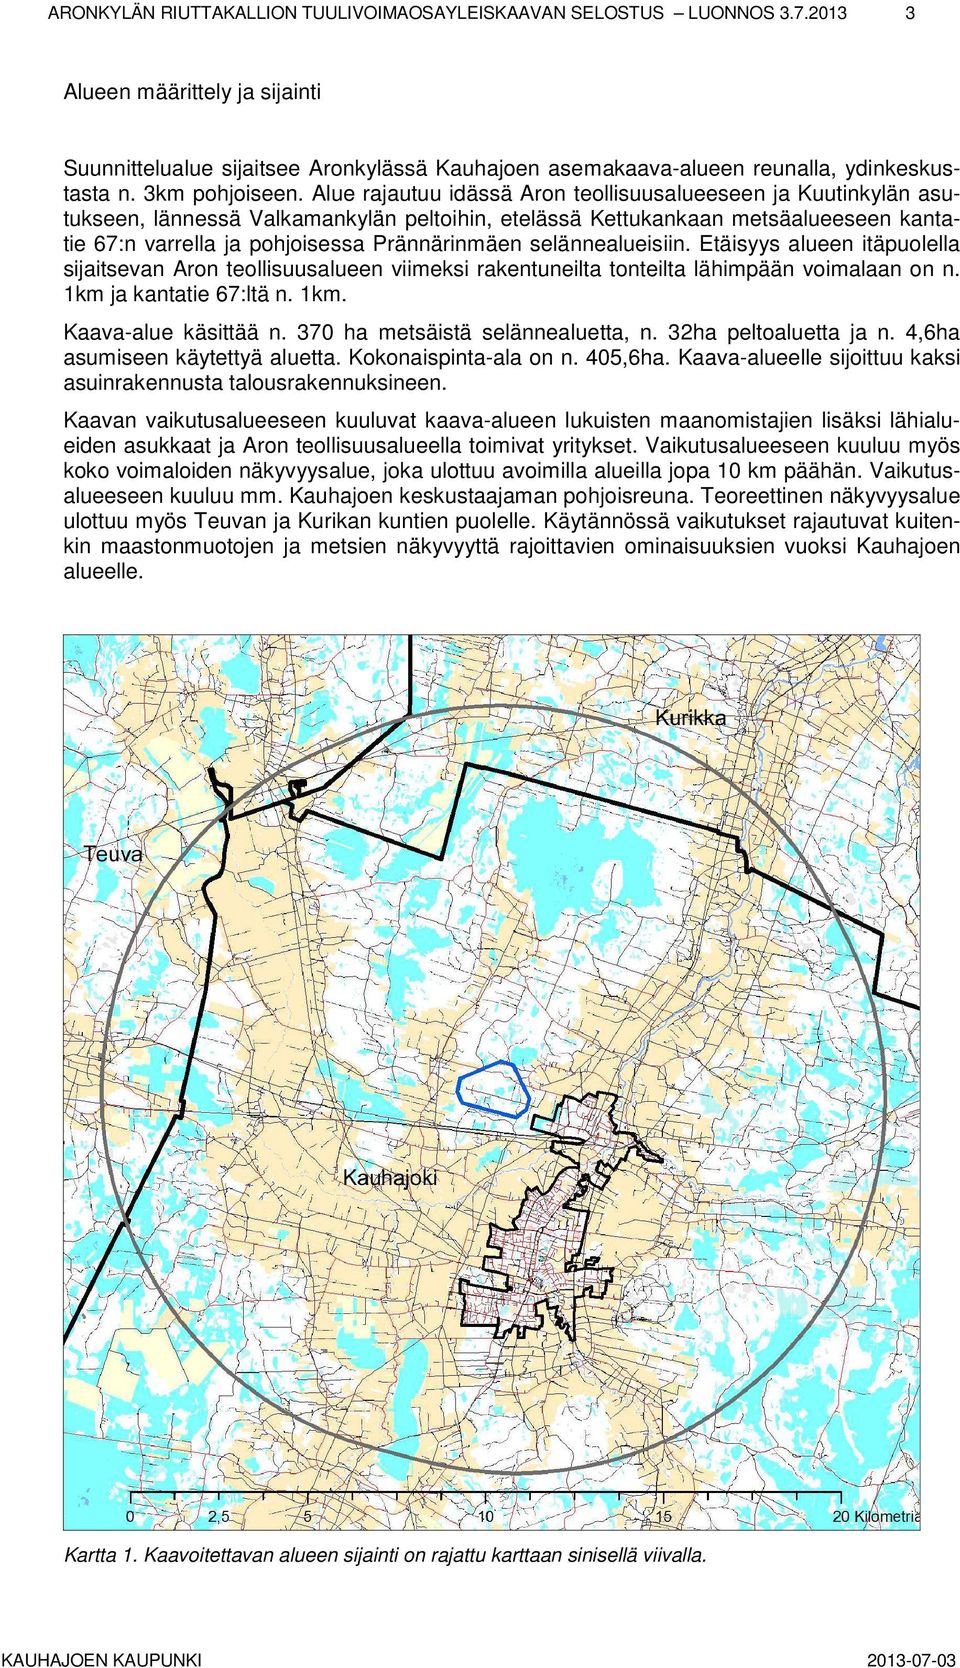 Alue rajautuu idässä Aron teollisuusalueeseen ja Kuutinkylän asutukseen, lännessä Valkamankylän peltoihin, etelässä Kettukankaan metsäalueeseen kantatie 67:n varrella ja pohjoisessa Prännärinmäen